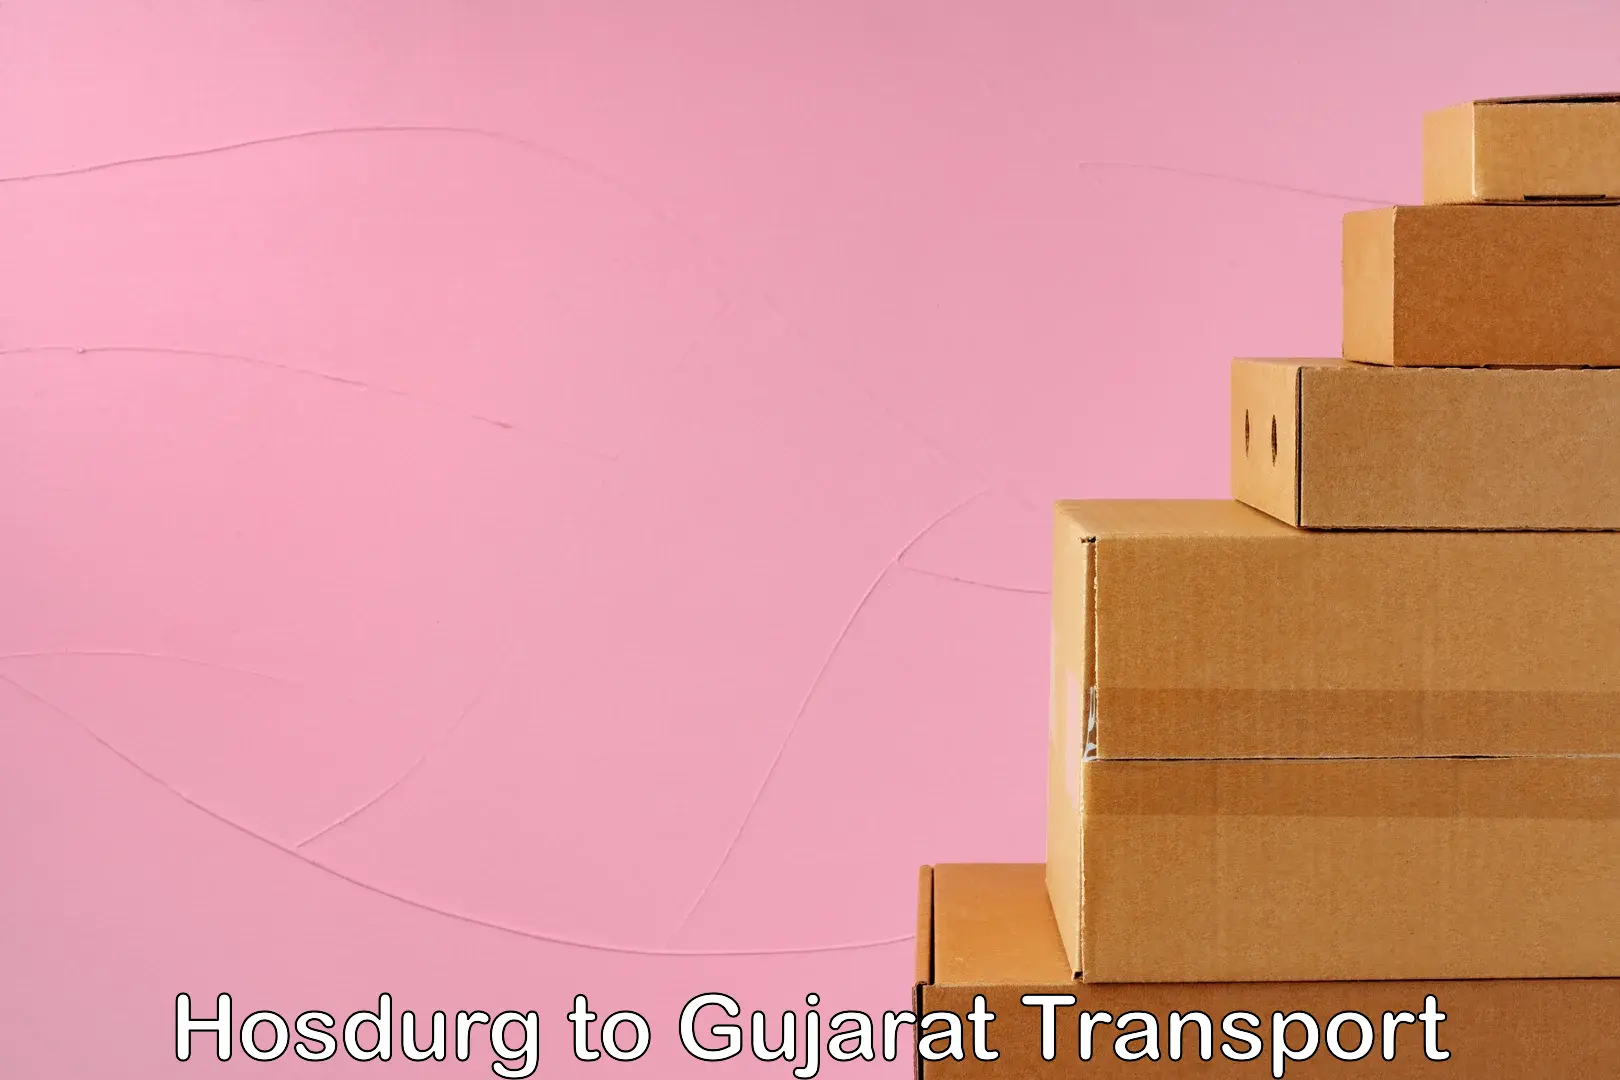 Container transport service Hosdurg to Gujarat